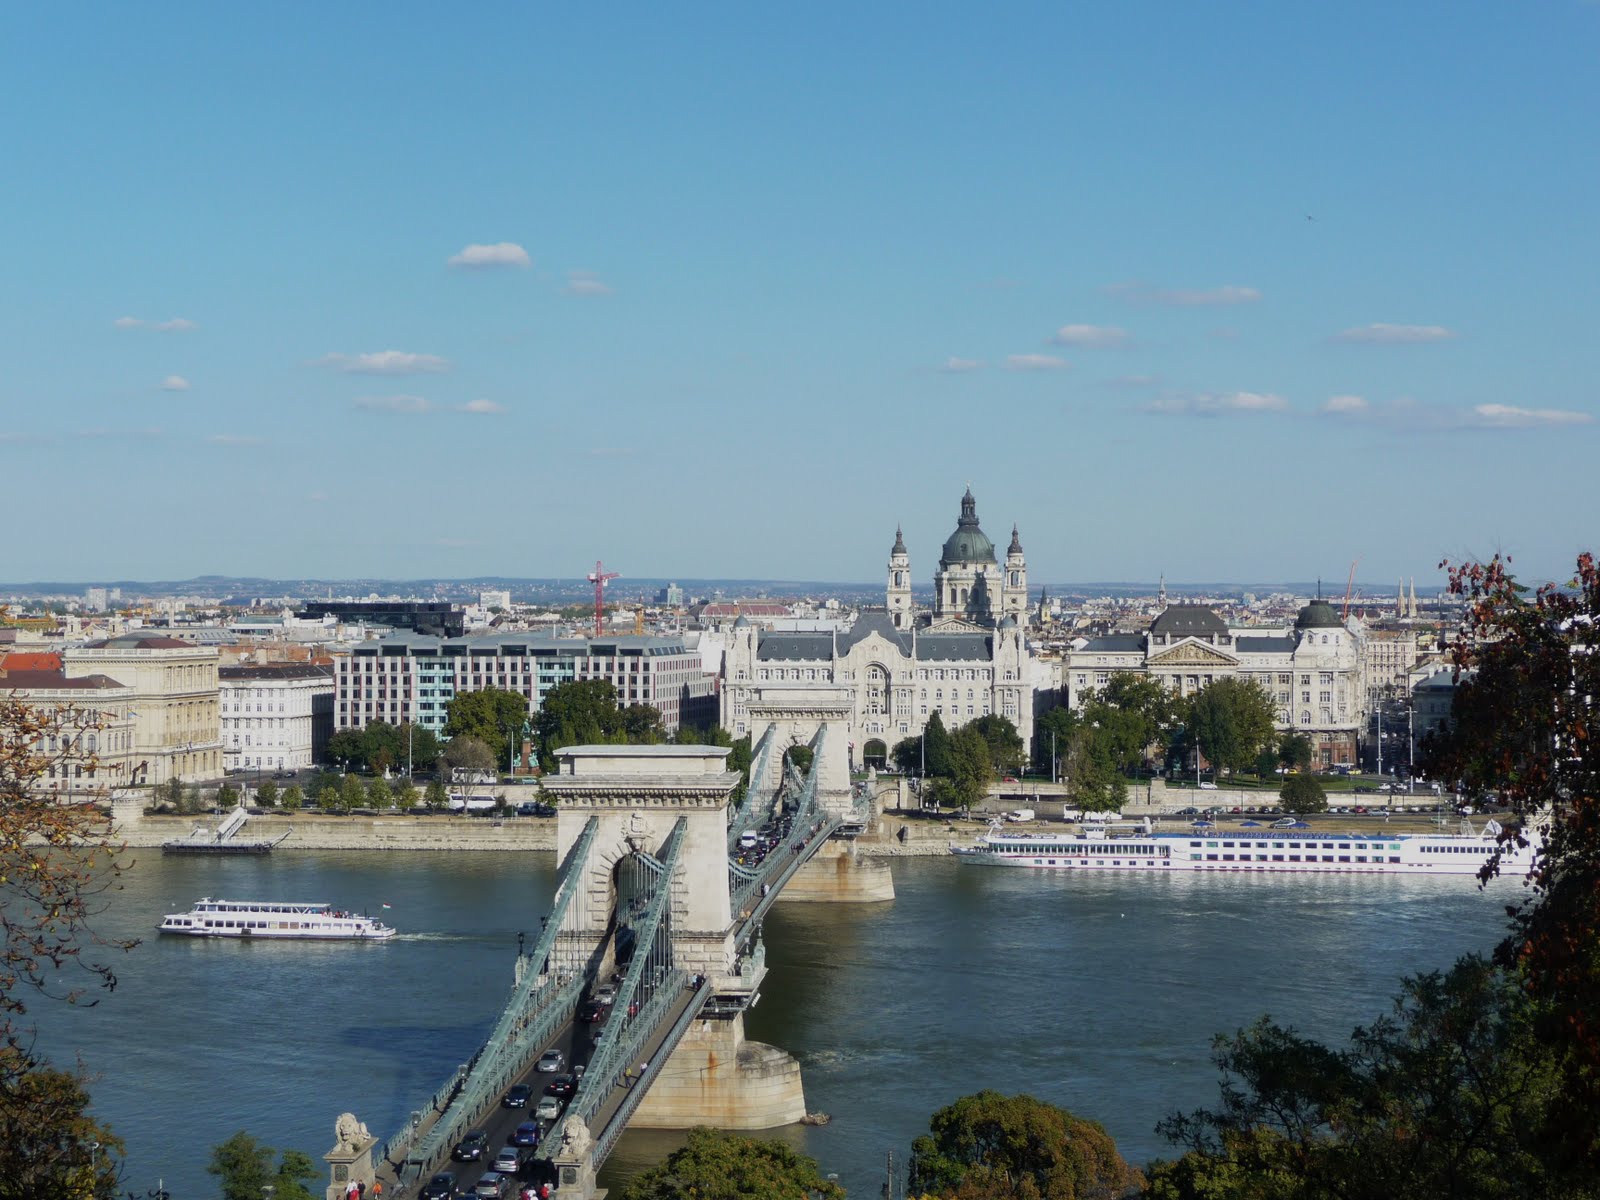 Danube-and-Chain-Bridge-Budapest-Hungary.jpg